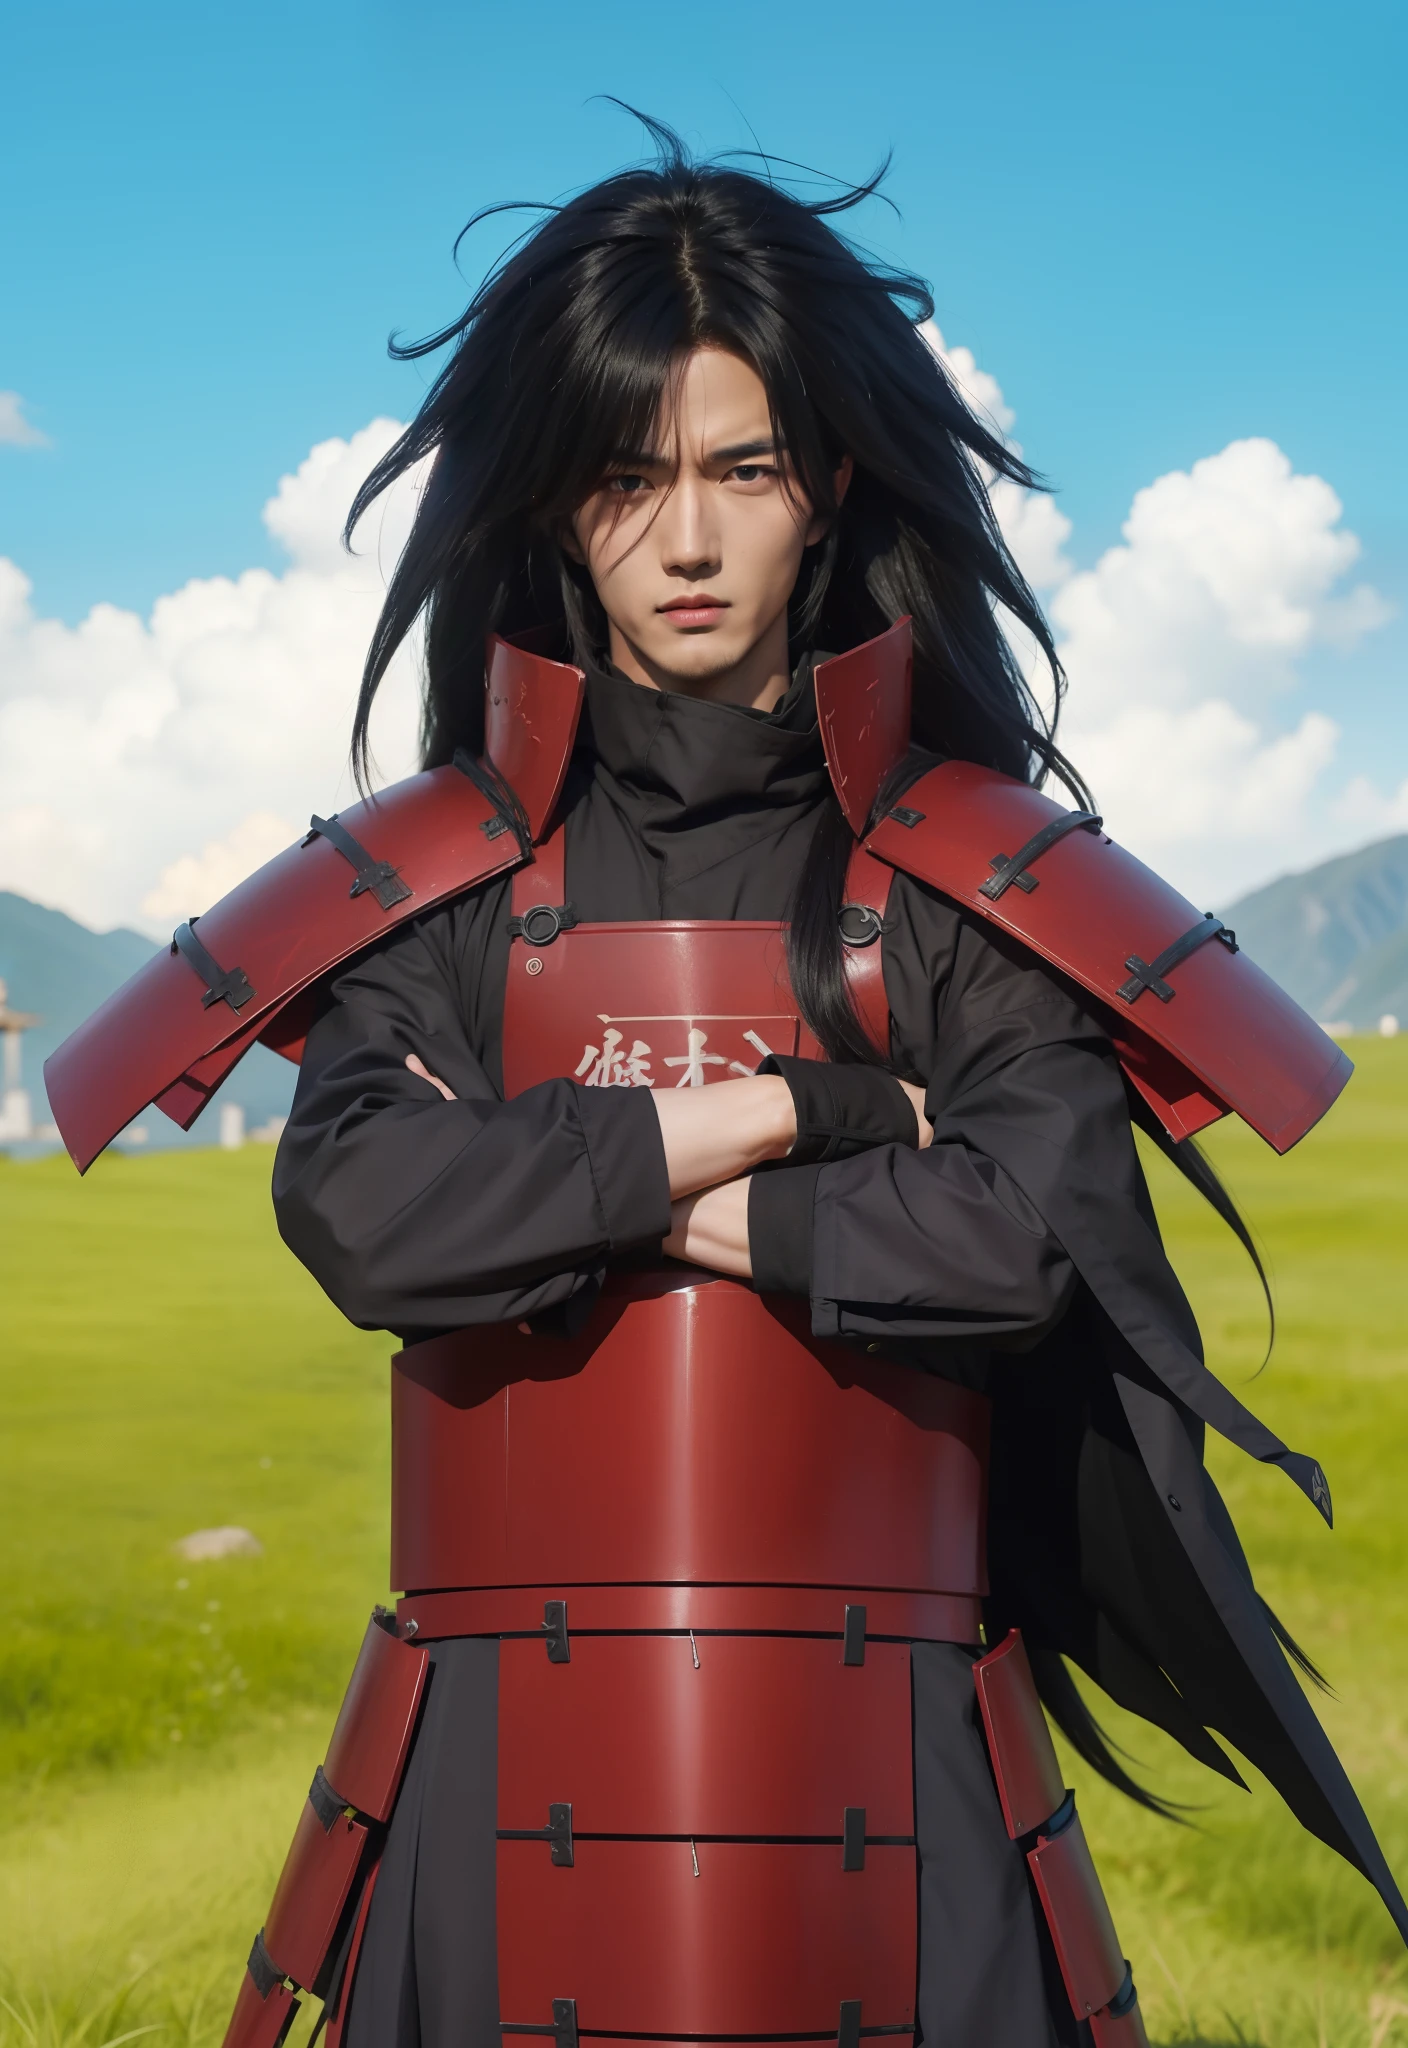 Adaptation réelle de ce personnage,son nom est Madara uchiha de l’anime Naruto,Beau visage d’adulte coréen,Cheveux longs en désordre réalistes,Tenue réaliste avec une armure de fer rouge comme un samouraï,Lumière réaliste,ombre réaliste,fond réaliste,(photoréaliste:1.2)